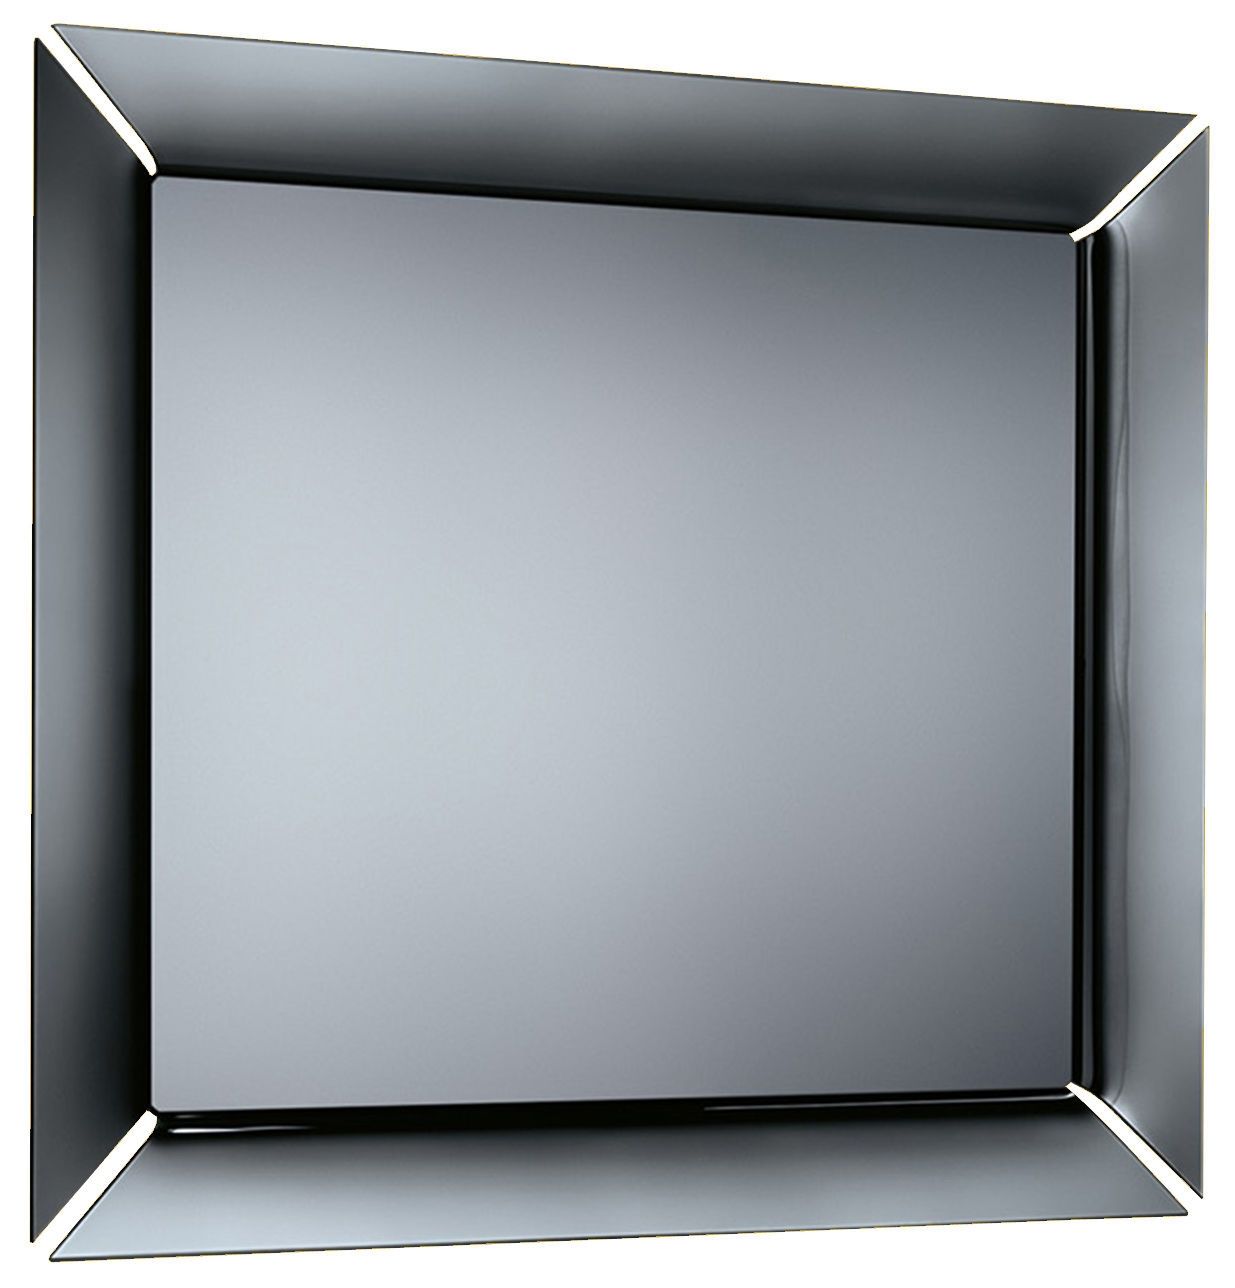 Výprodej FIAM zrcadla Caadre Standing (čtvercová) - DESIGNPROPAGANDA